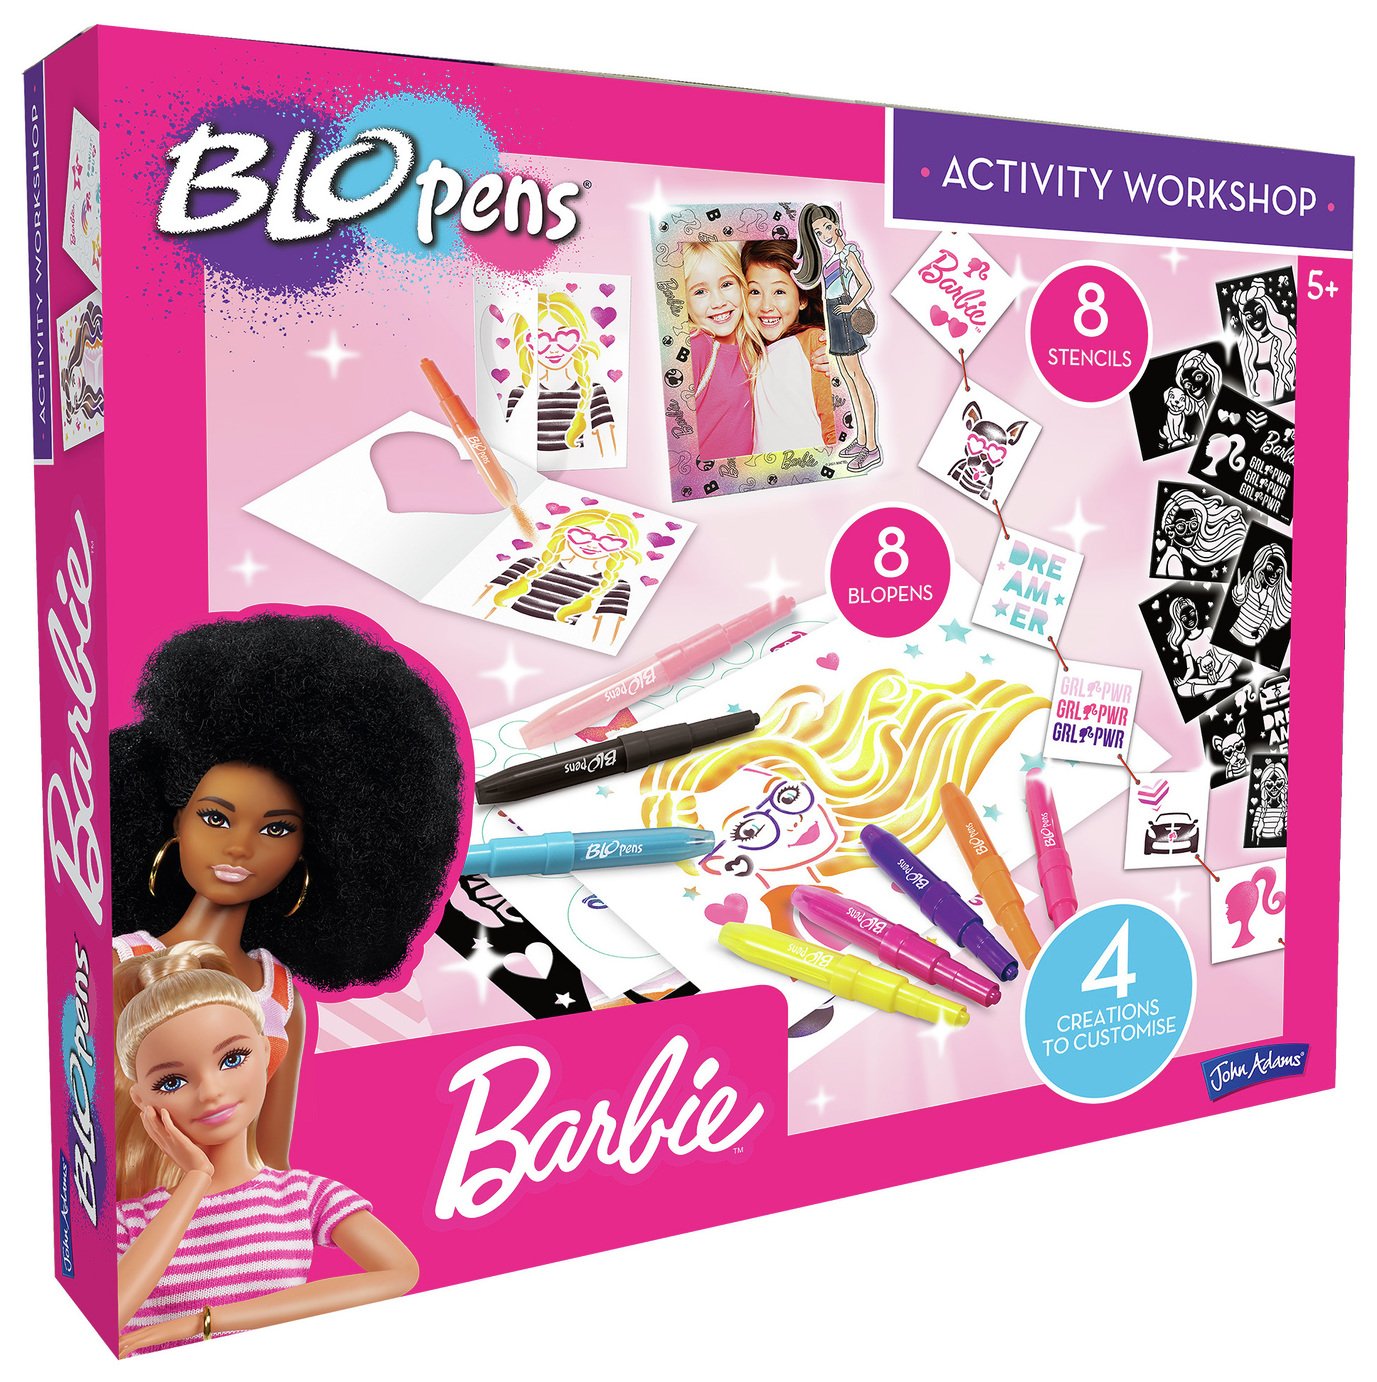 BLOPENS Barbie Activity Workshop